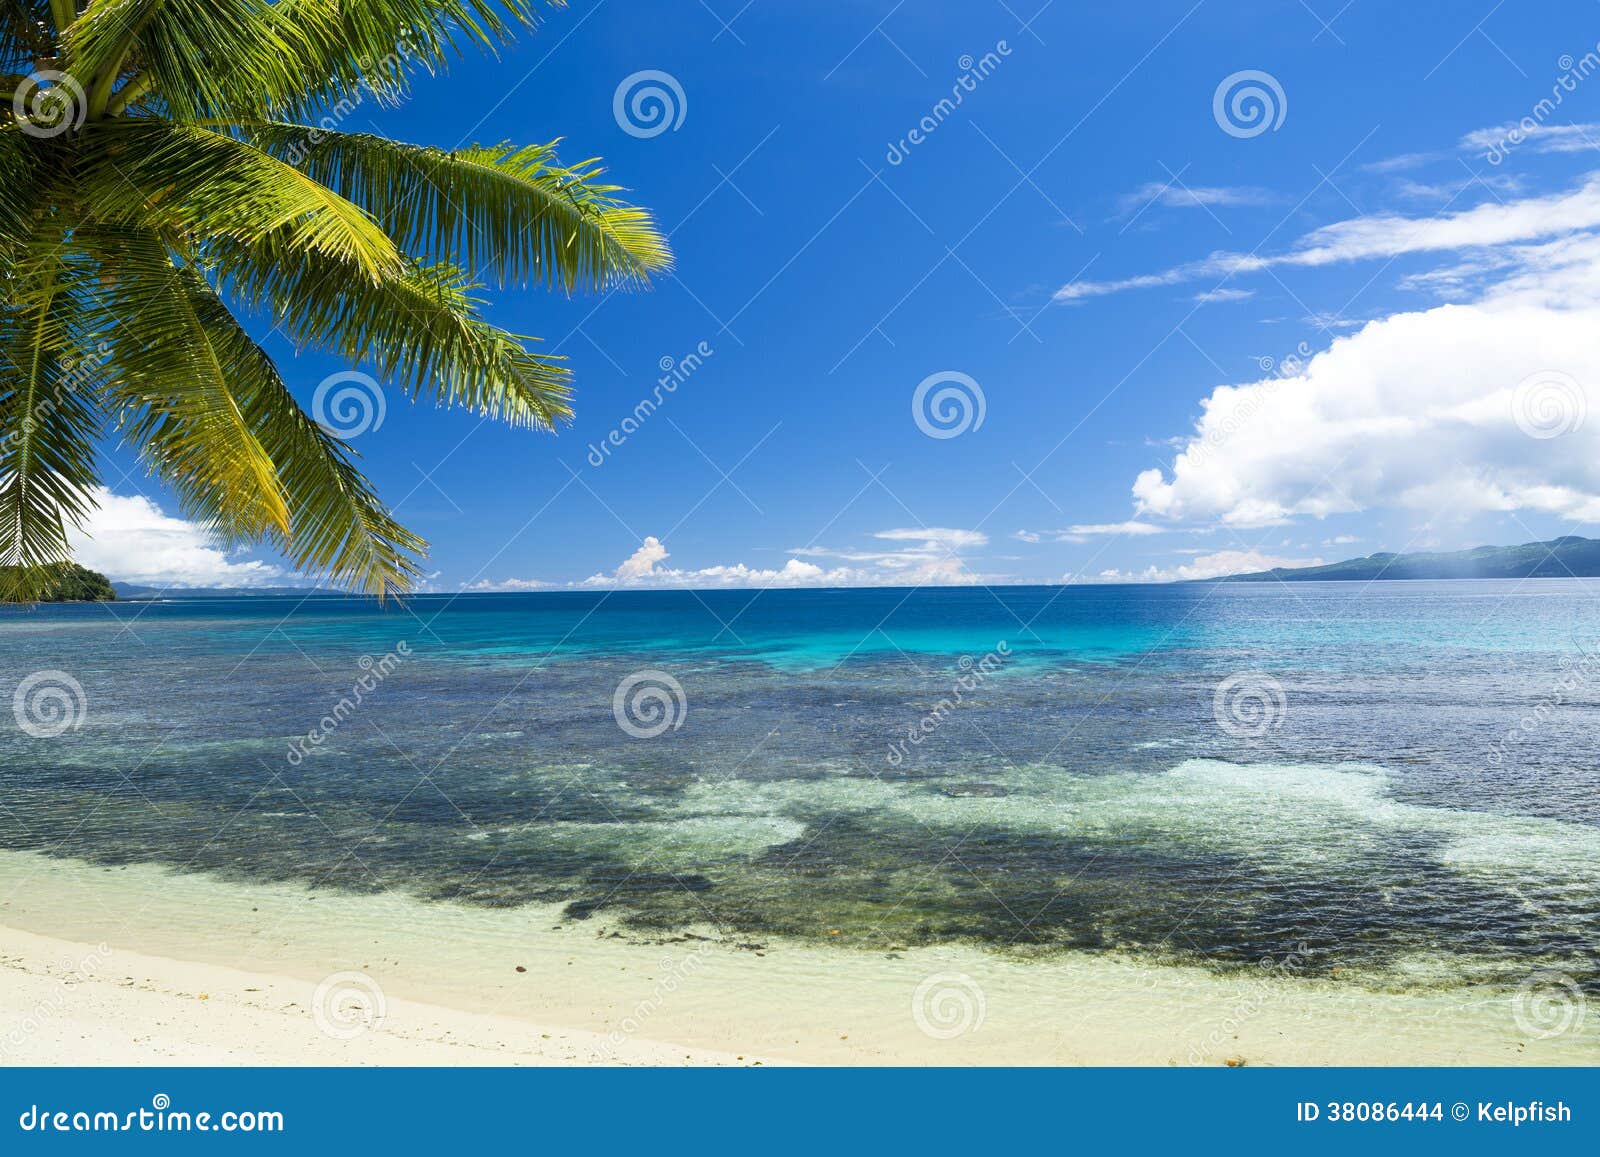 Paraíso tropical da praia. Uma praia tropical da areia branca com luxúria, linha de palmeiras verde água de turquesa e um céu grande, azul.